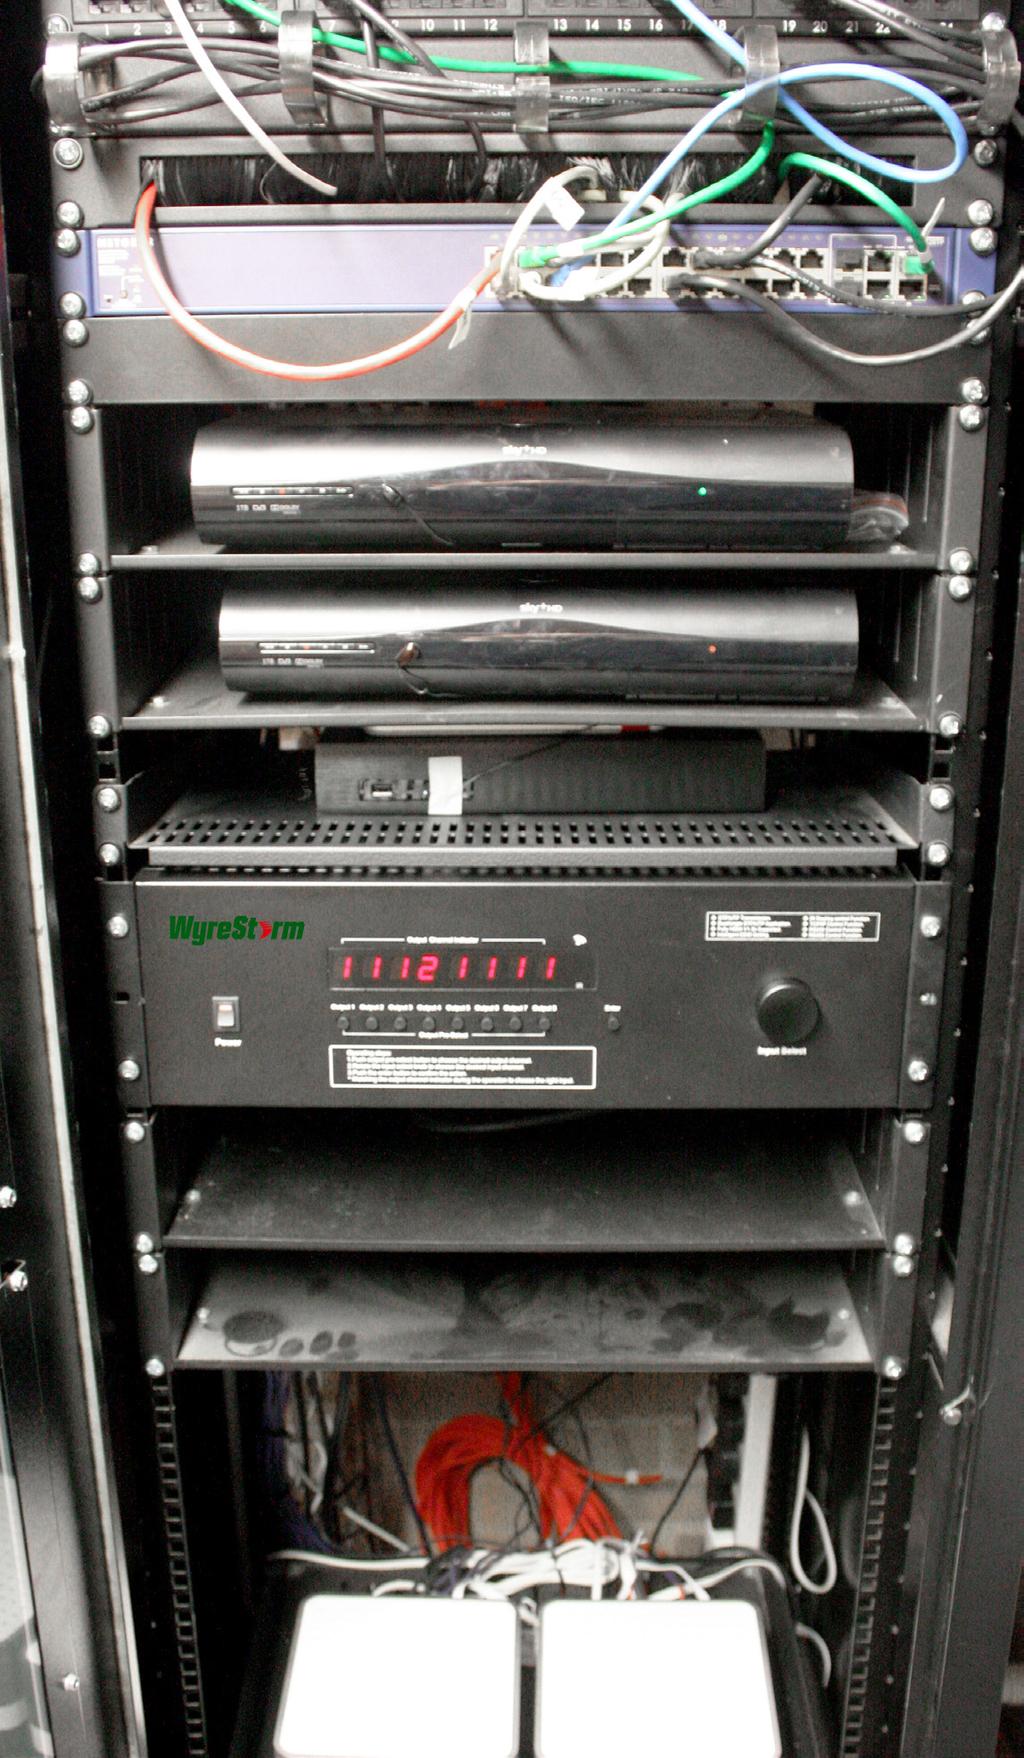 Project Equipment List: 1 x WyreStorm MX-0808-PRO 8x8 HD matrix switcher 8 x WyreStorm EX-1UTP-IR-100 HDBaseT 100m/328ft extender sets 1 x SW0108 1x8 HDMI switcher RTI control system 2 x Freeview